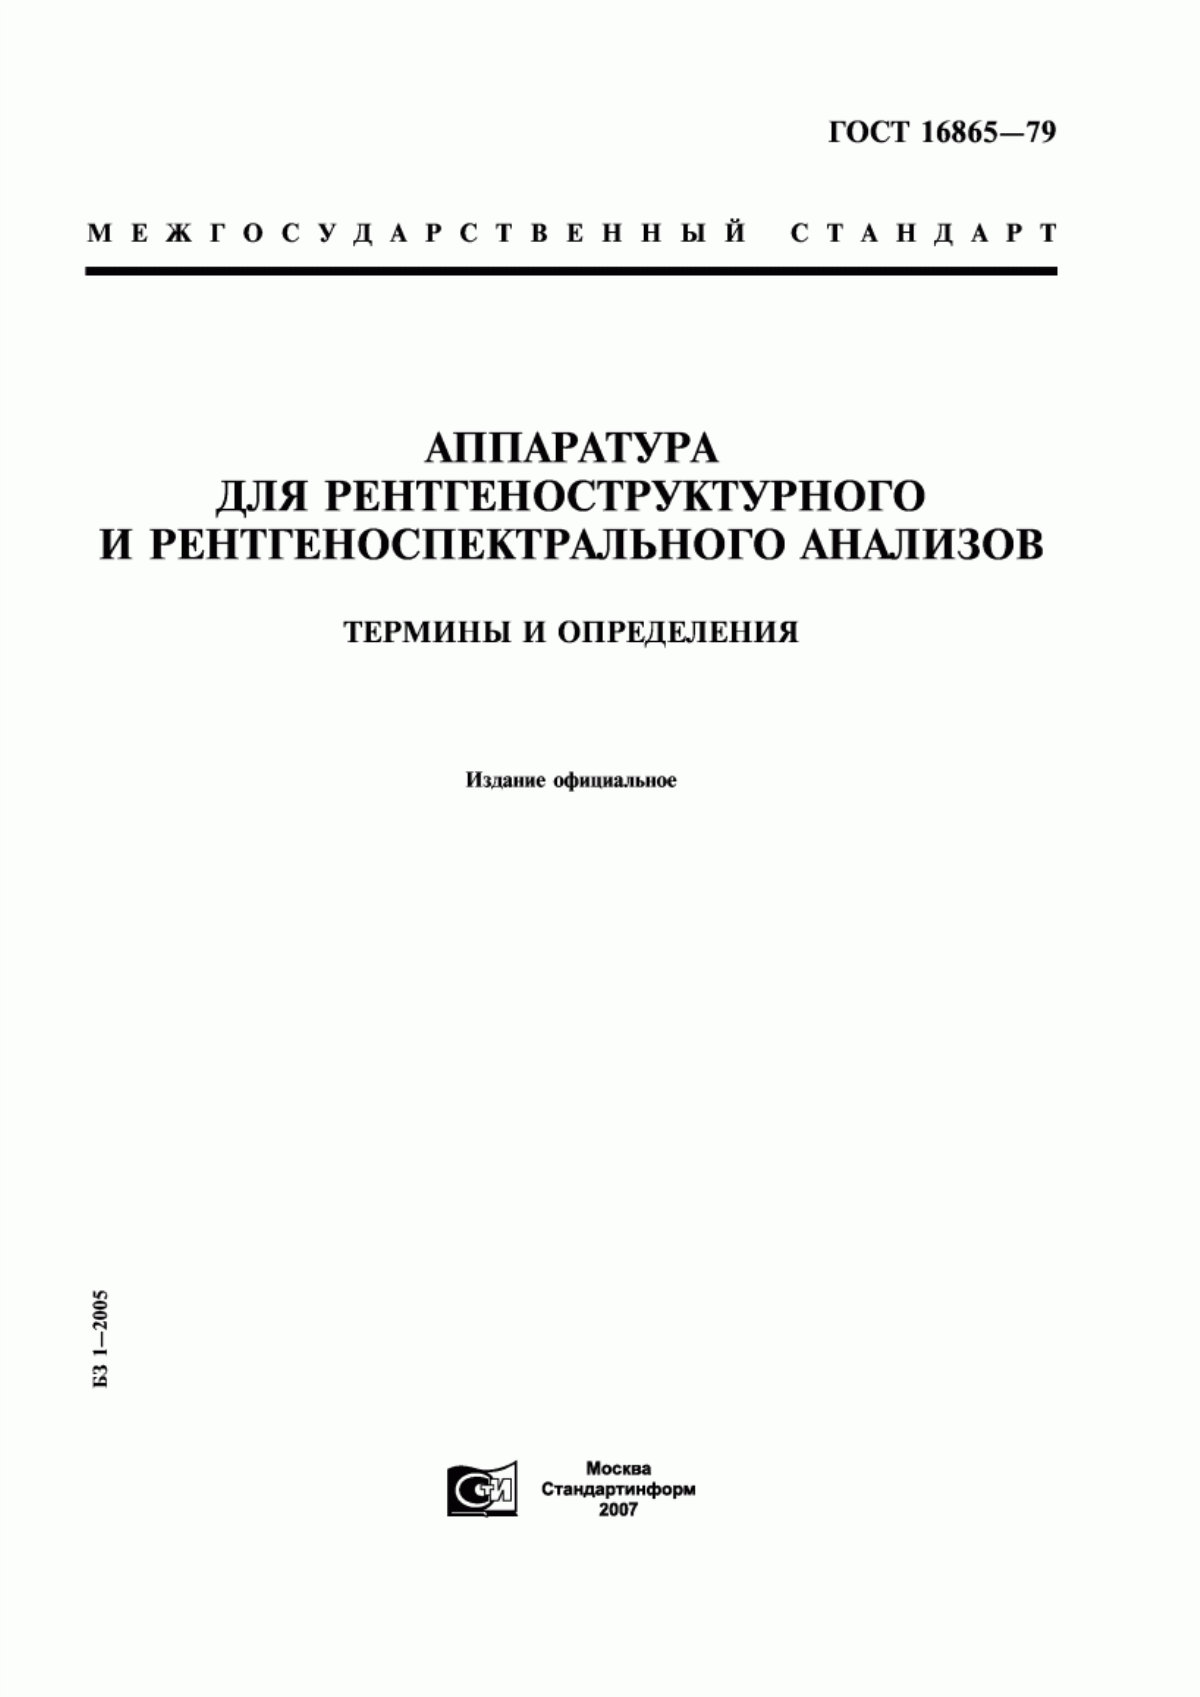 ГОСТ 16865-79 Аппаратура для рентгеноструктурного и рентгеноспектрального анализов. Термины и определения